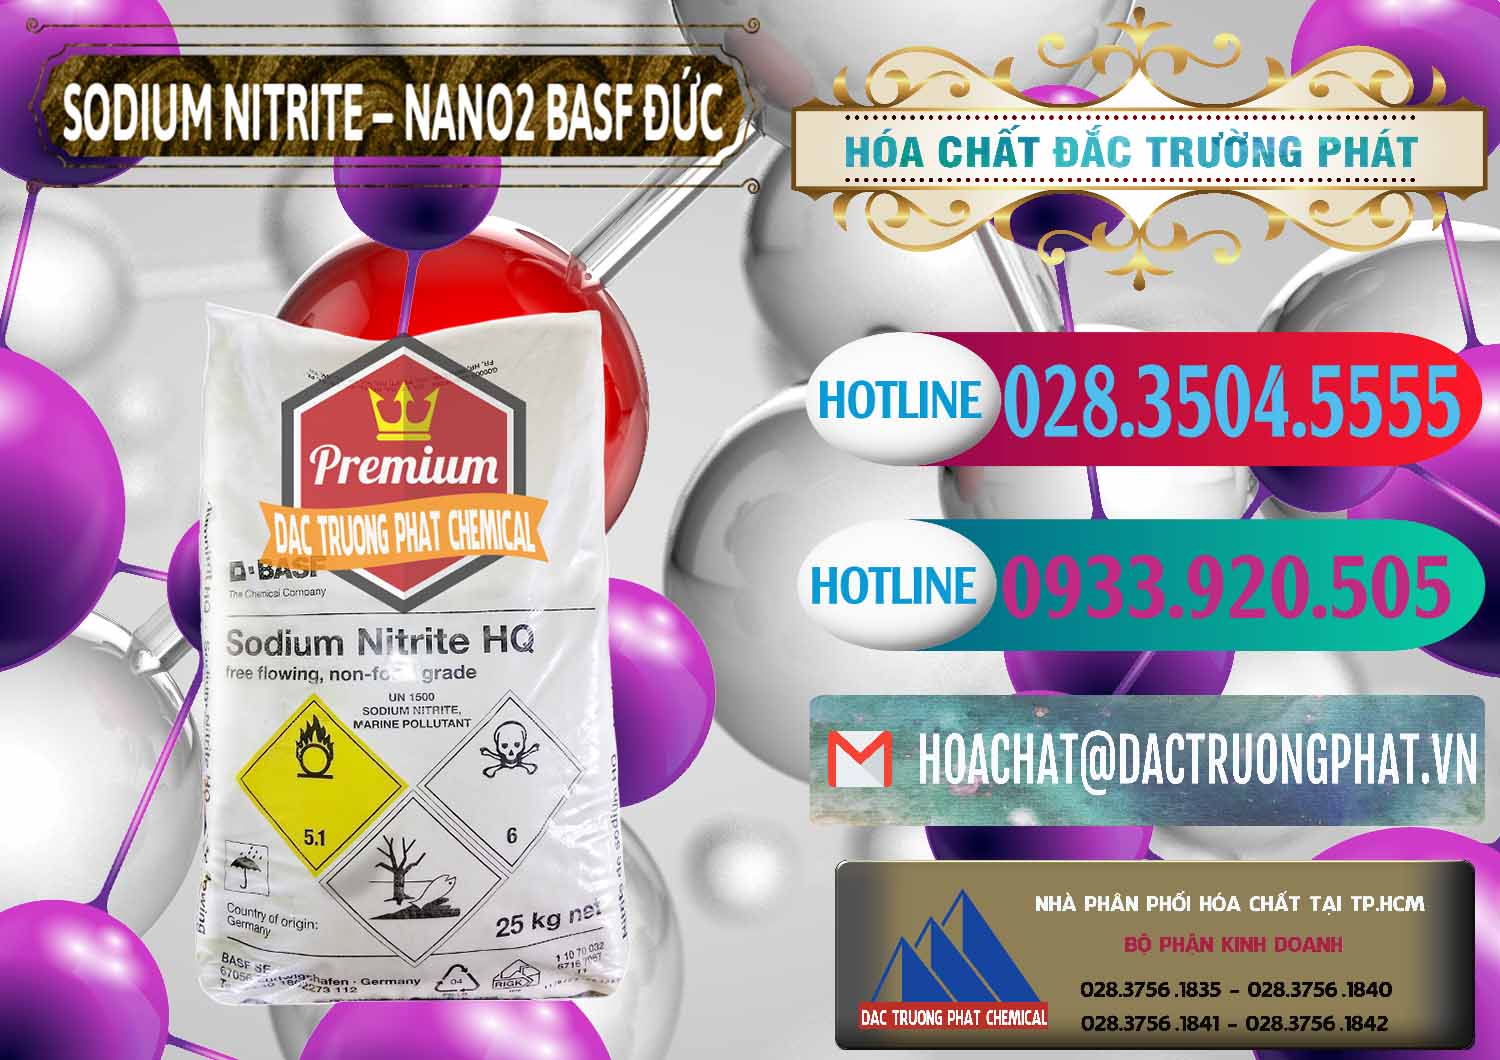 Đơn vị nhập khẩu ( bán ) Sodium Nitrite - NANO2 Đức BASF Germany - 0148 - Công ty nhập khẩu & cung cấp hóa chất tại TP.HCM - truongphat.vn